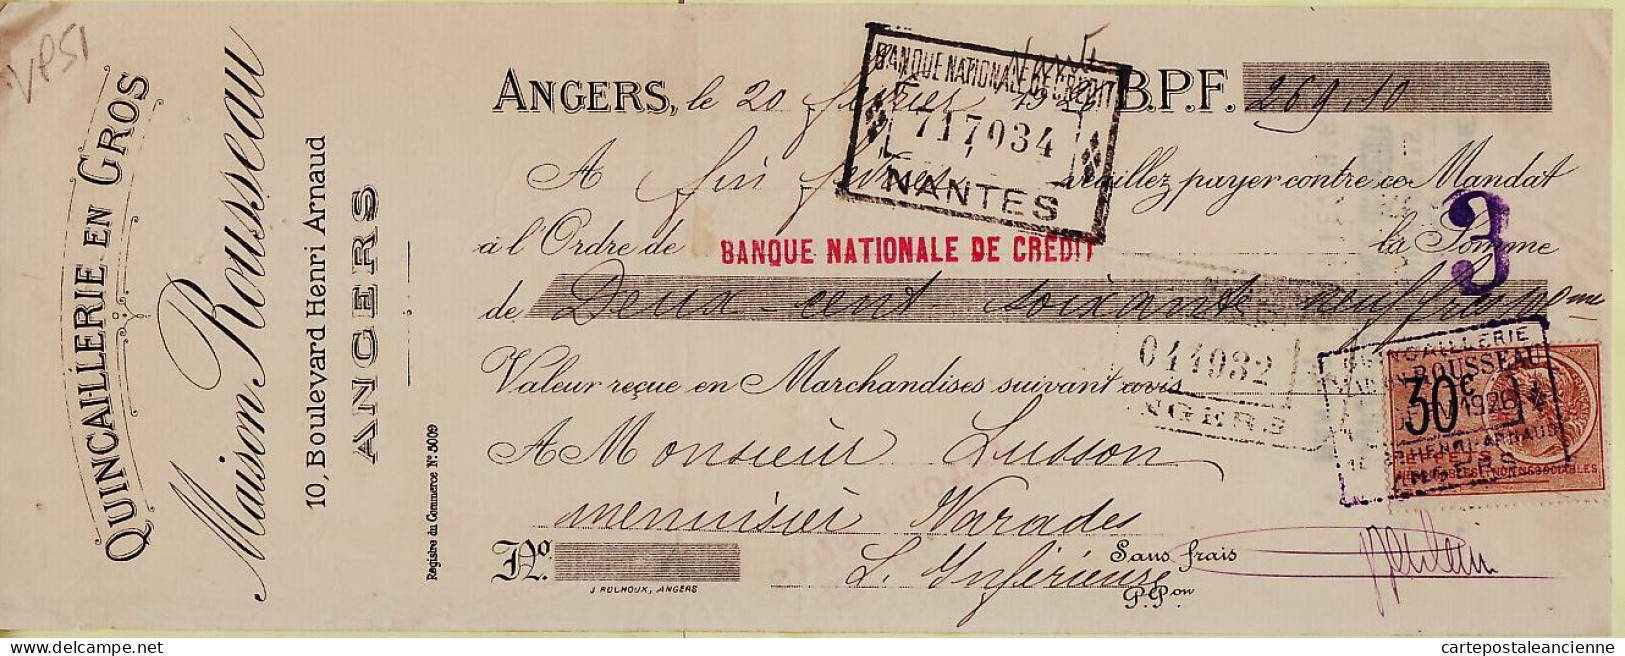 31266 / Quincaillerie En Gros ROUSSEAU Angers Lettre De Change 20.02.1926 à LUSSON Menuiserie Varades Timbre Fiscal - Bills Of Exchange